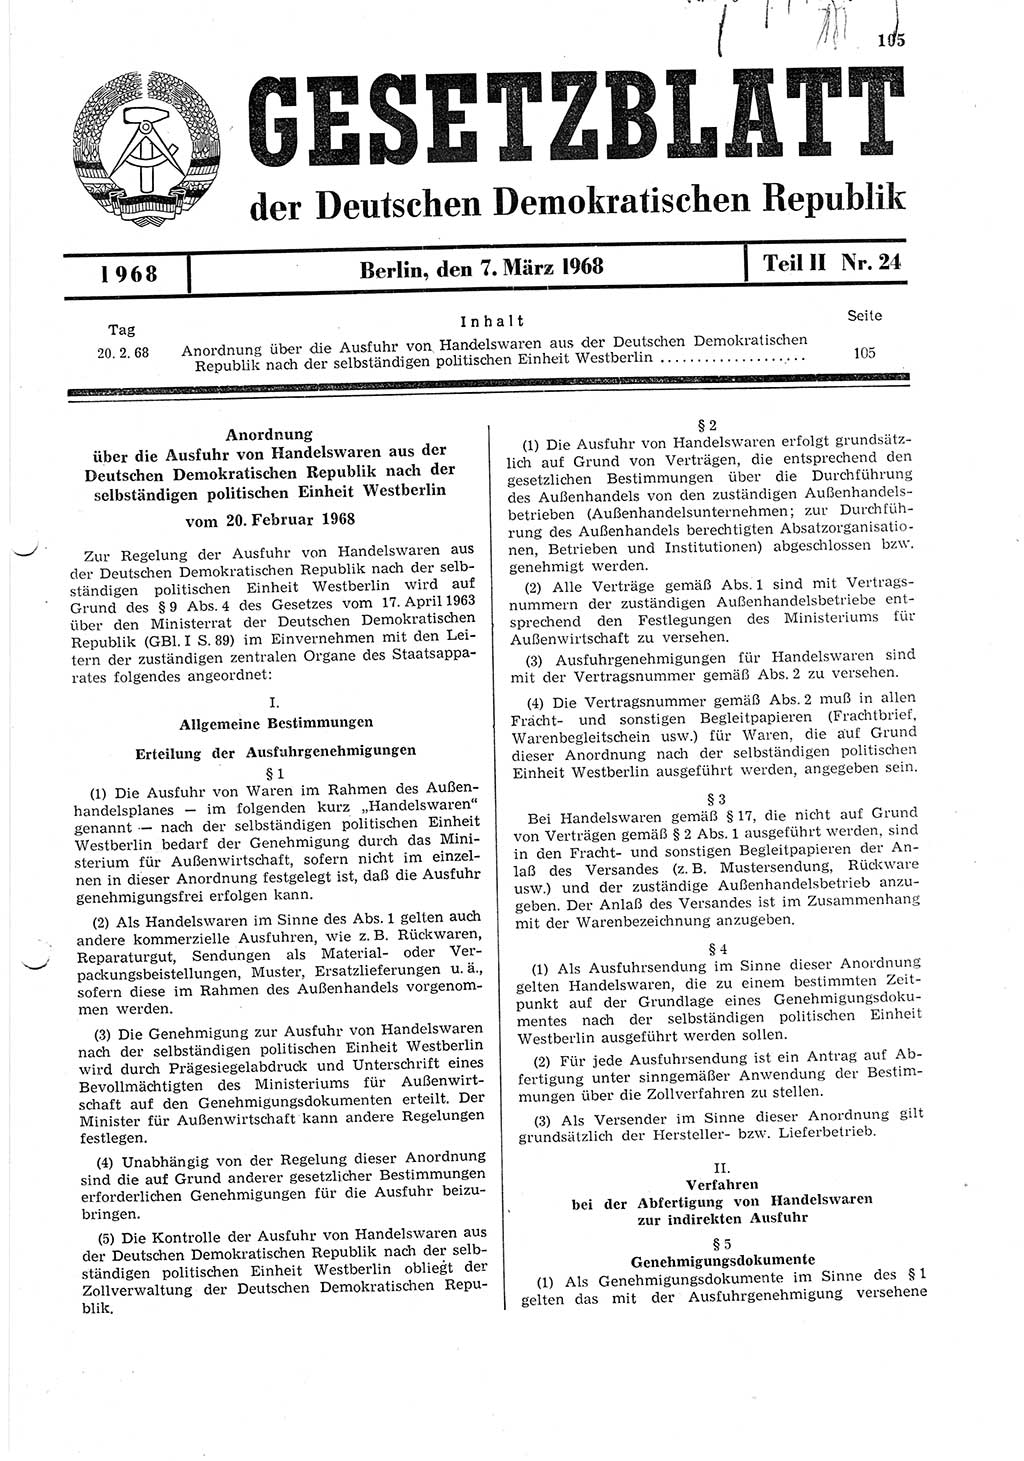 Gesetzblatt (GBl.) der Deutschen Demokratischen Republik (DDR) Teil ⅠⅠ 1968, Seite 105 (GBl. DDR ⅠⅠ 1968, S. 105)